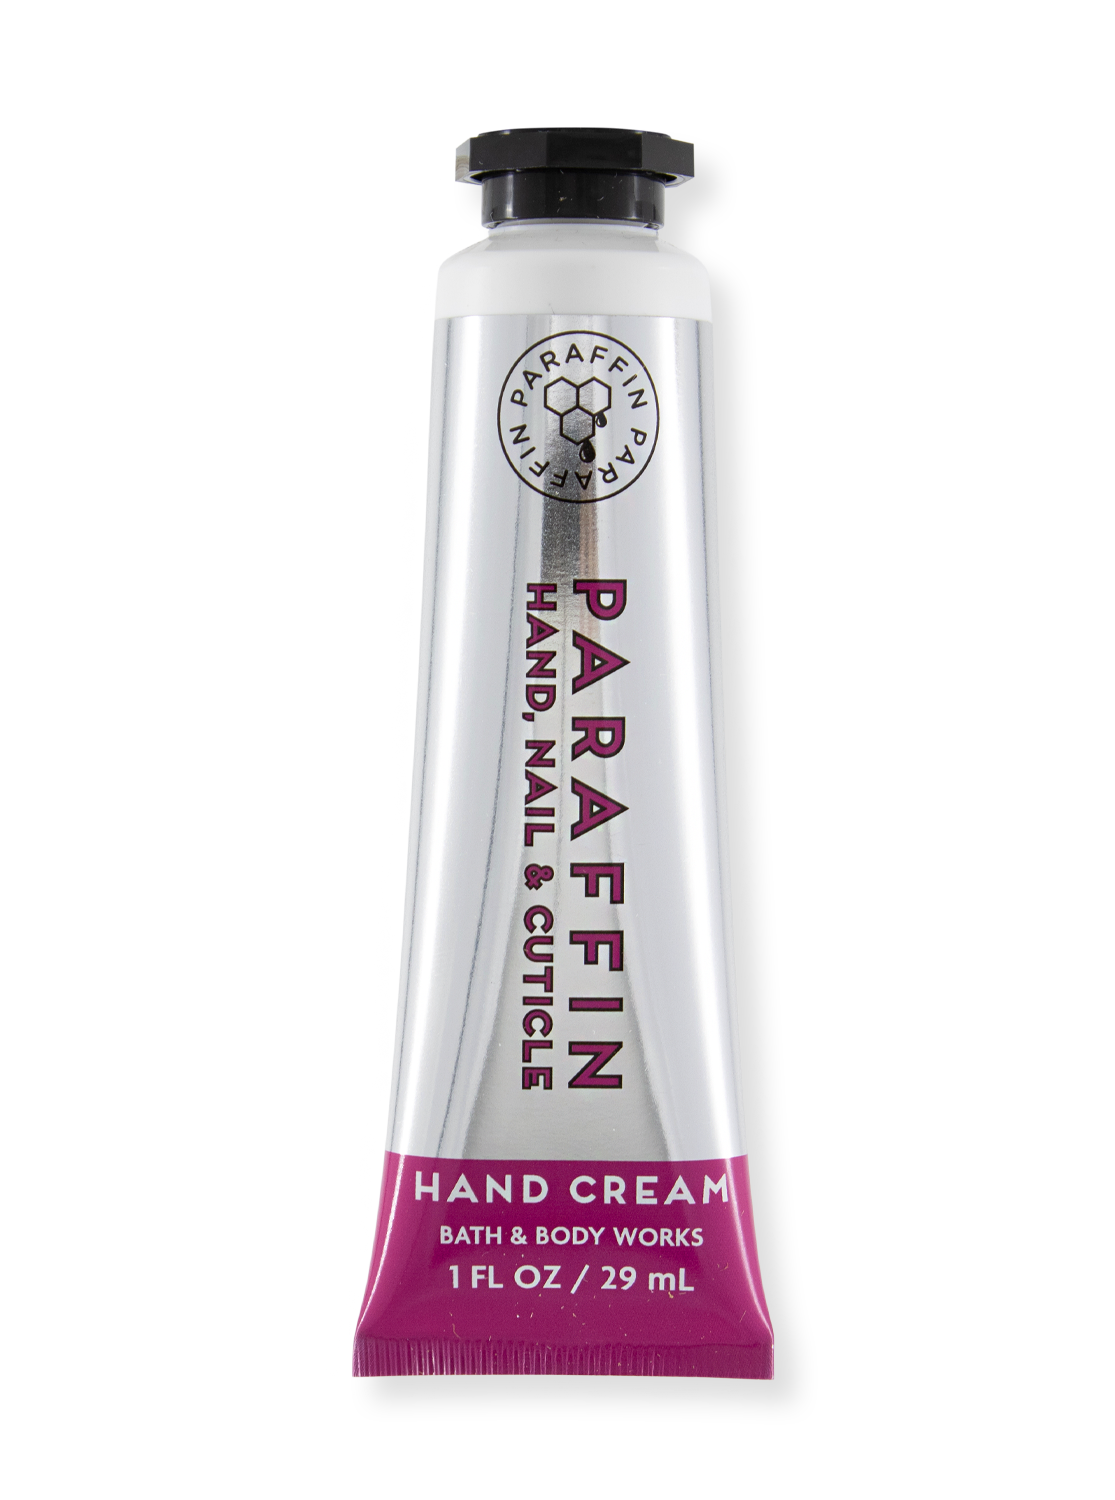 Crème pour les mains - Parafin - 29 ml